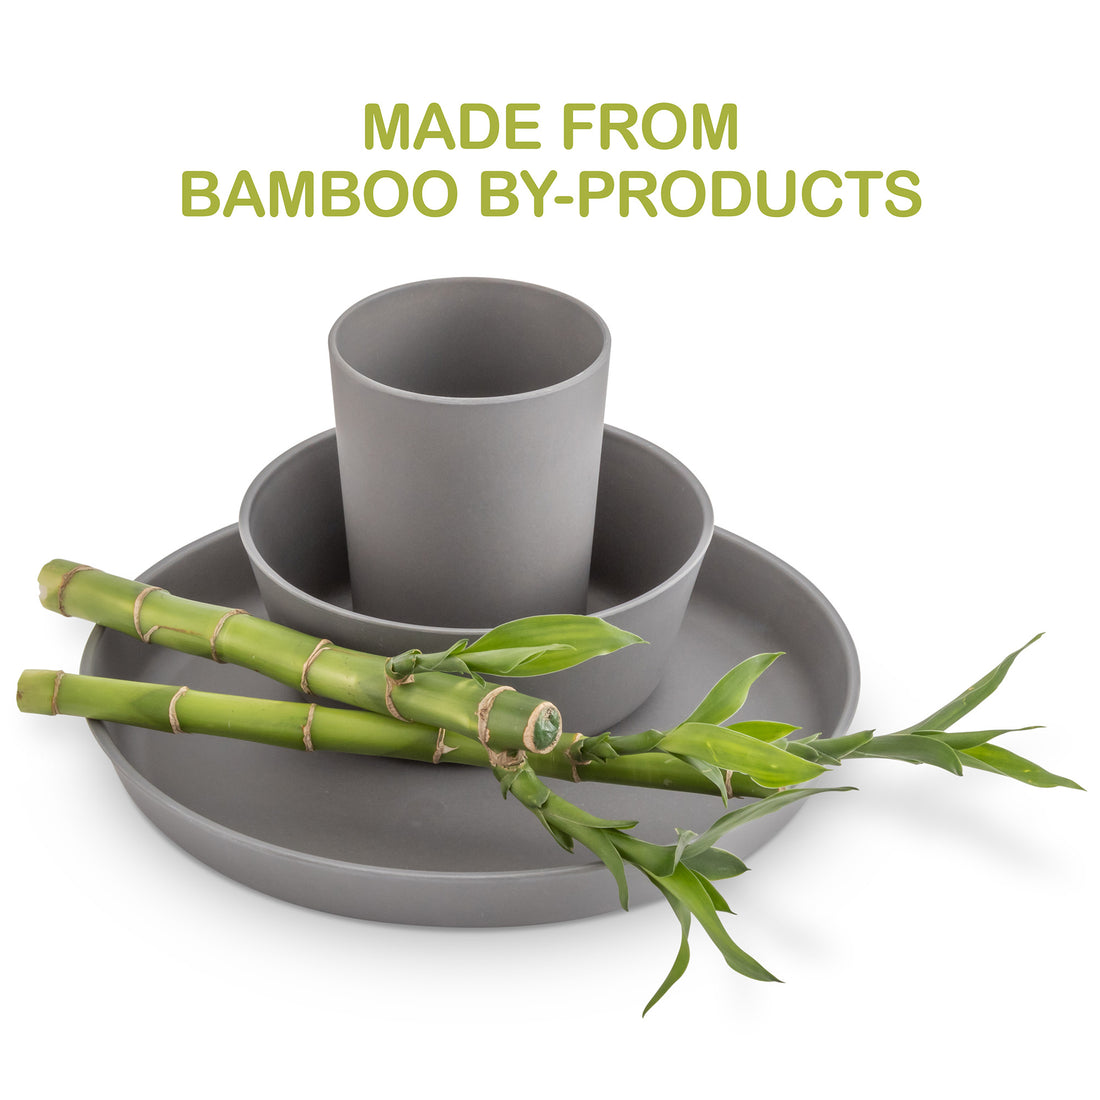 Reusable Bamboo Fibre Coffee Cups Contain Toxic Melamine Resin